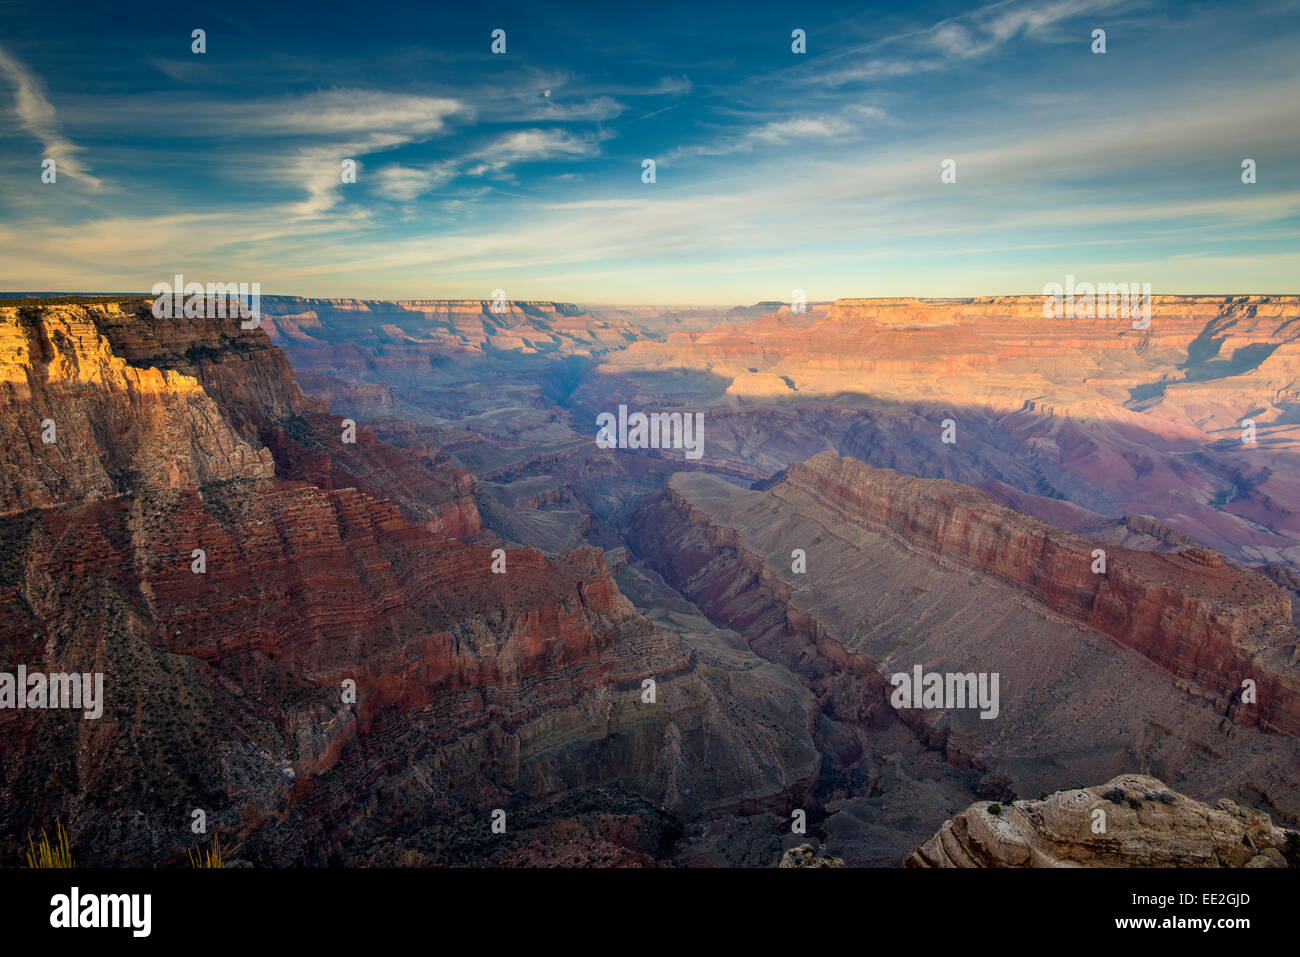 Vista superiore del bordo sud dalla vista del deserto, il Parco Nazionale del Grand Canyon, Arizona, Stati Uniti d'America Foto Stock